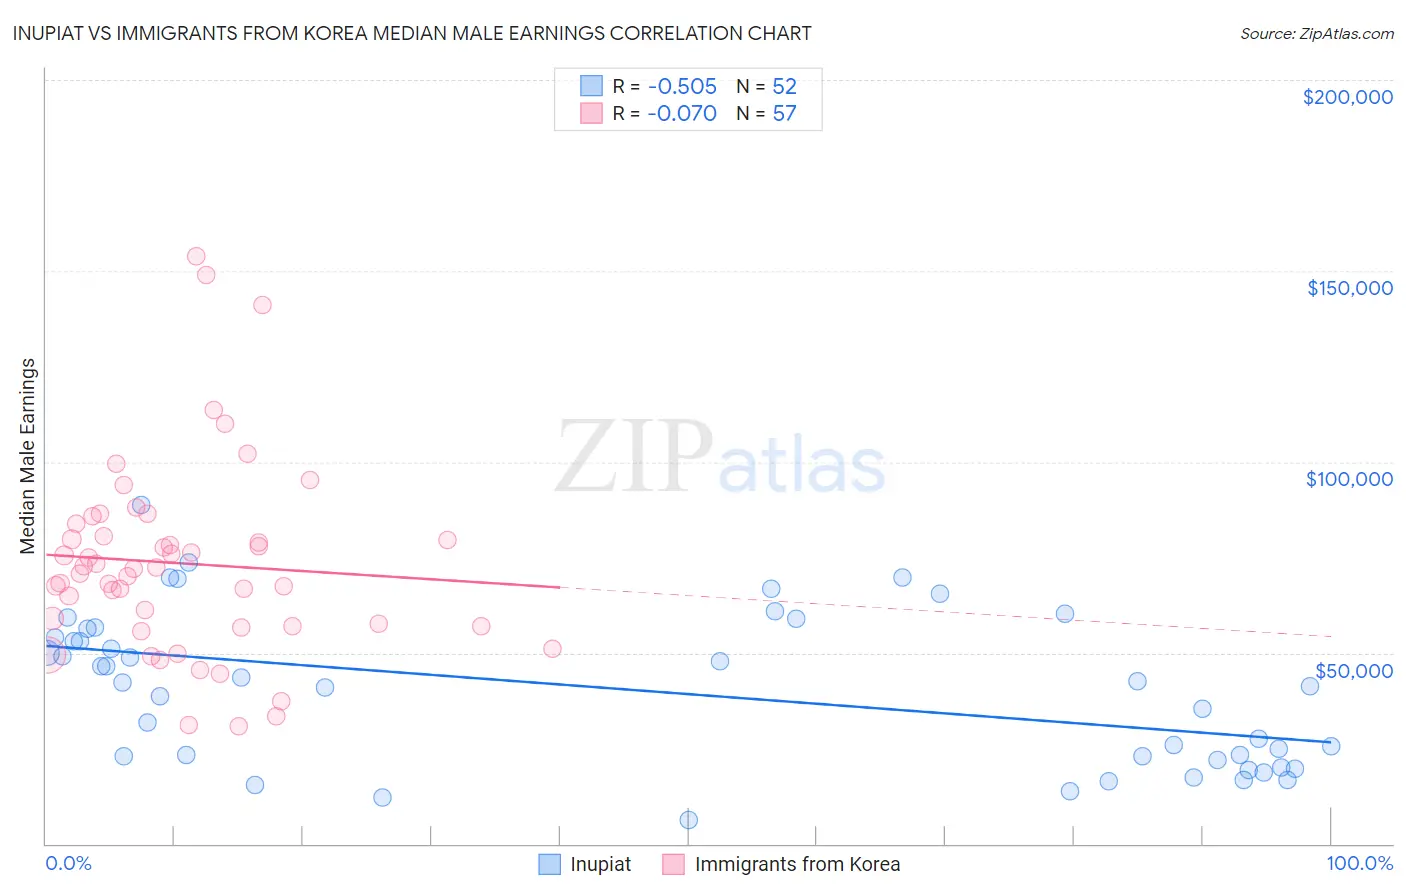 Inupiat vs Immigrants from Korea Median Male Earnings